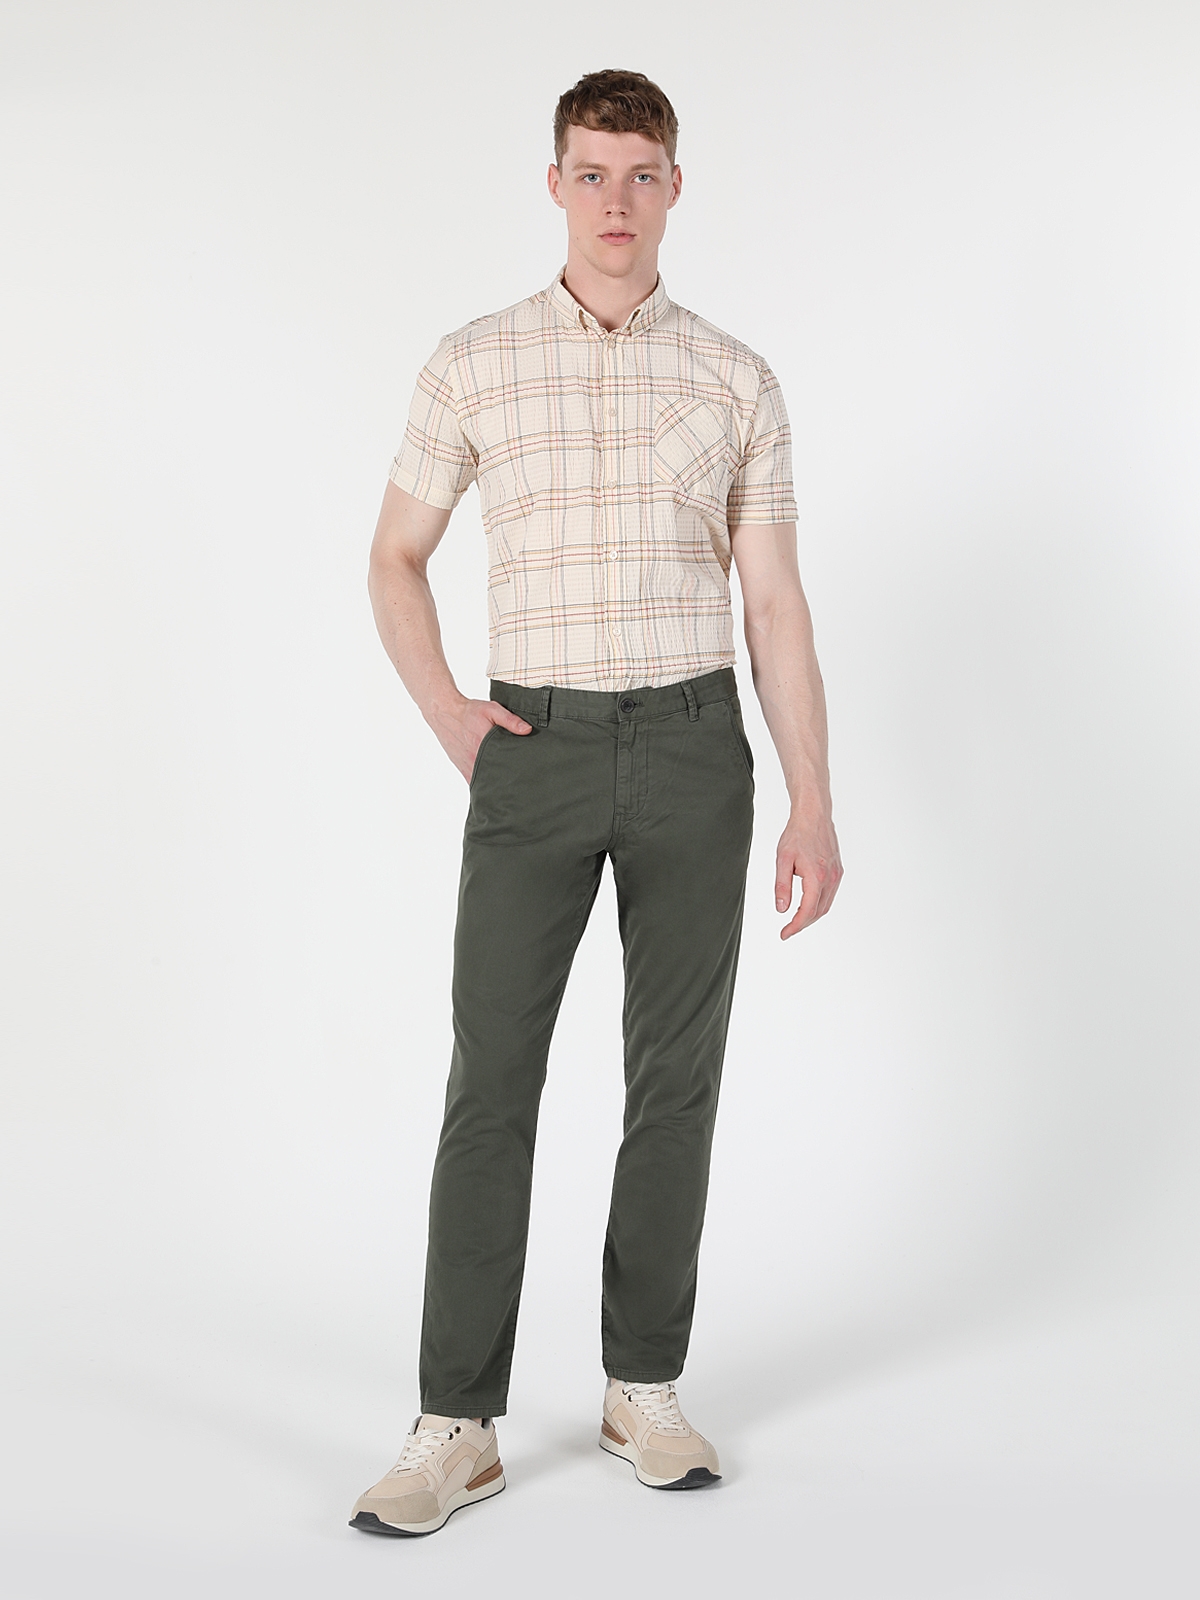 Afficher les détails de Pantalon Vert Pour Hommes, Coupe Slim, Taille Moyenne, Jambe Droite